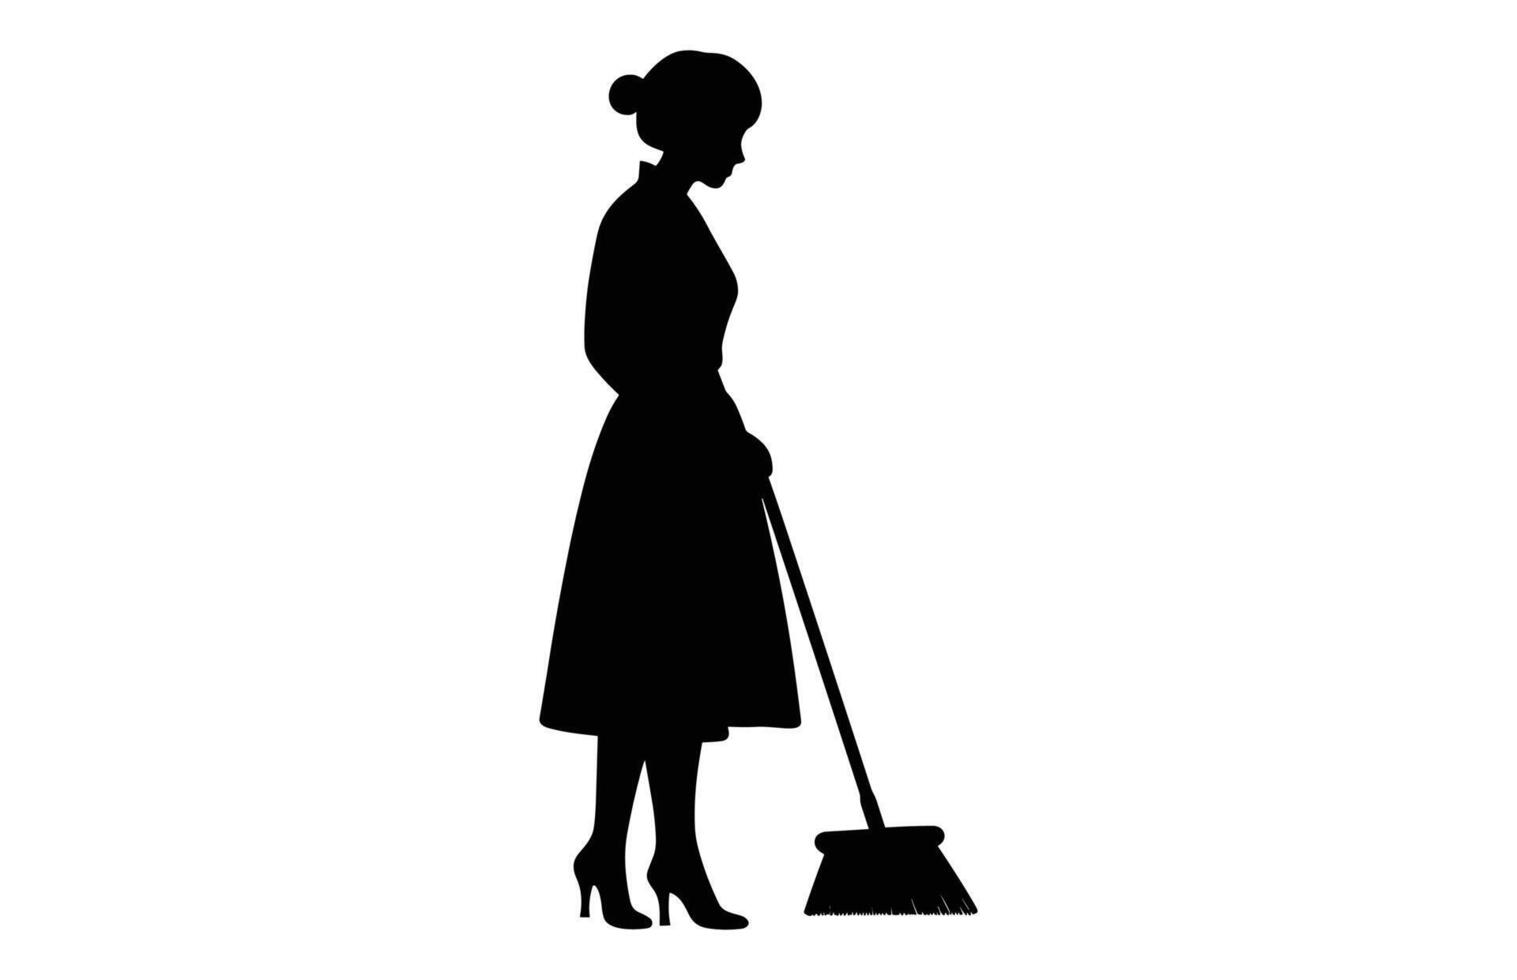 rengöring lady svart ClipArt, sopmaskin flicka svart och vit vektor, kvinna rengöringsmedel silhuett isolerat på en vit bakgrund vektor